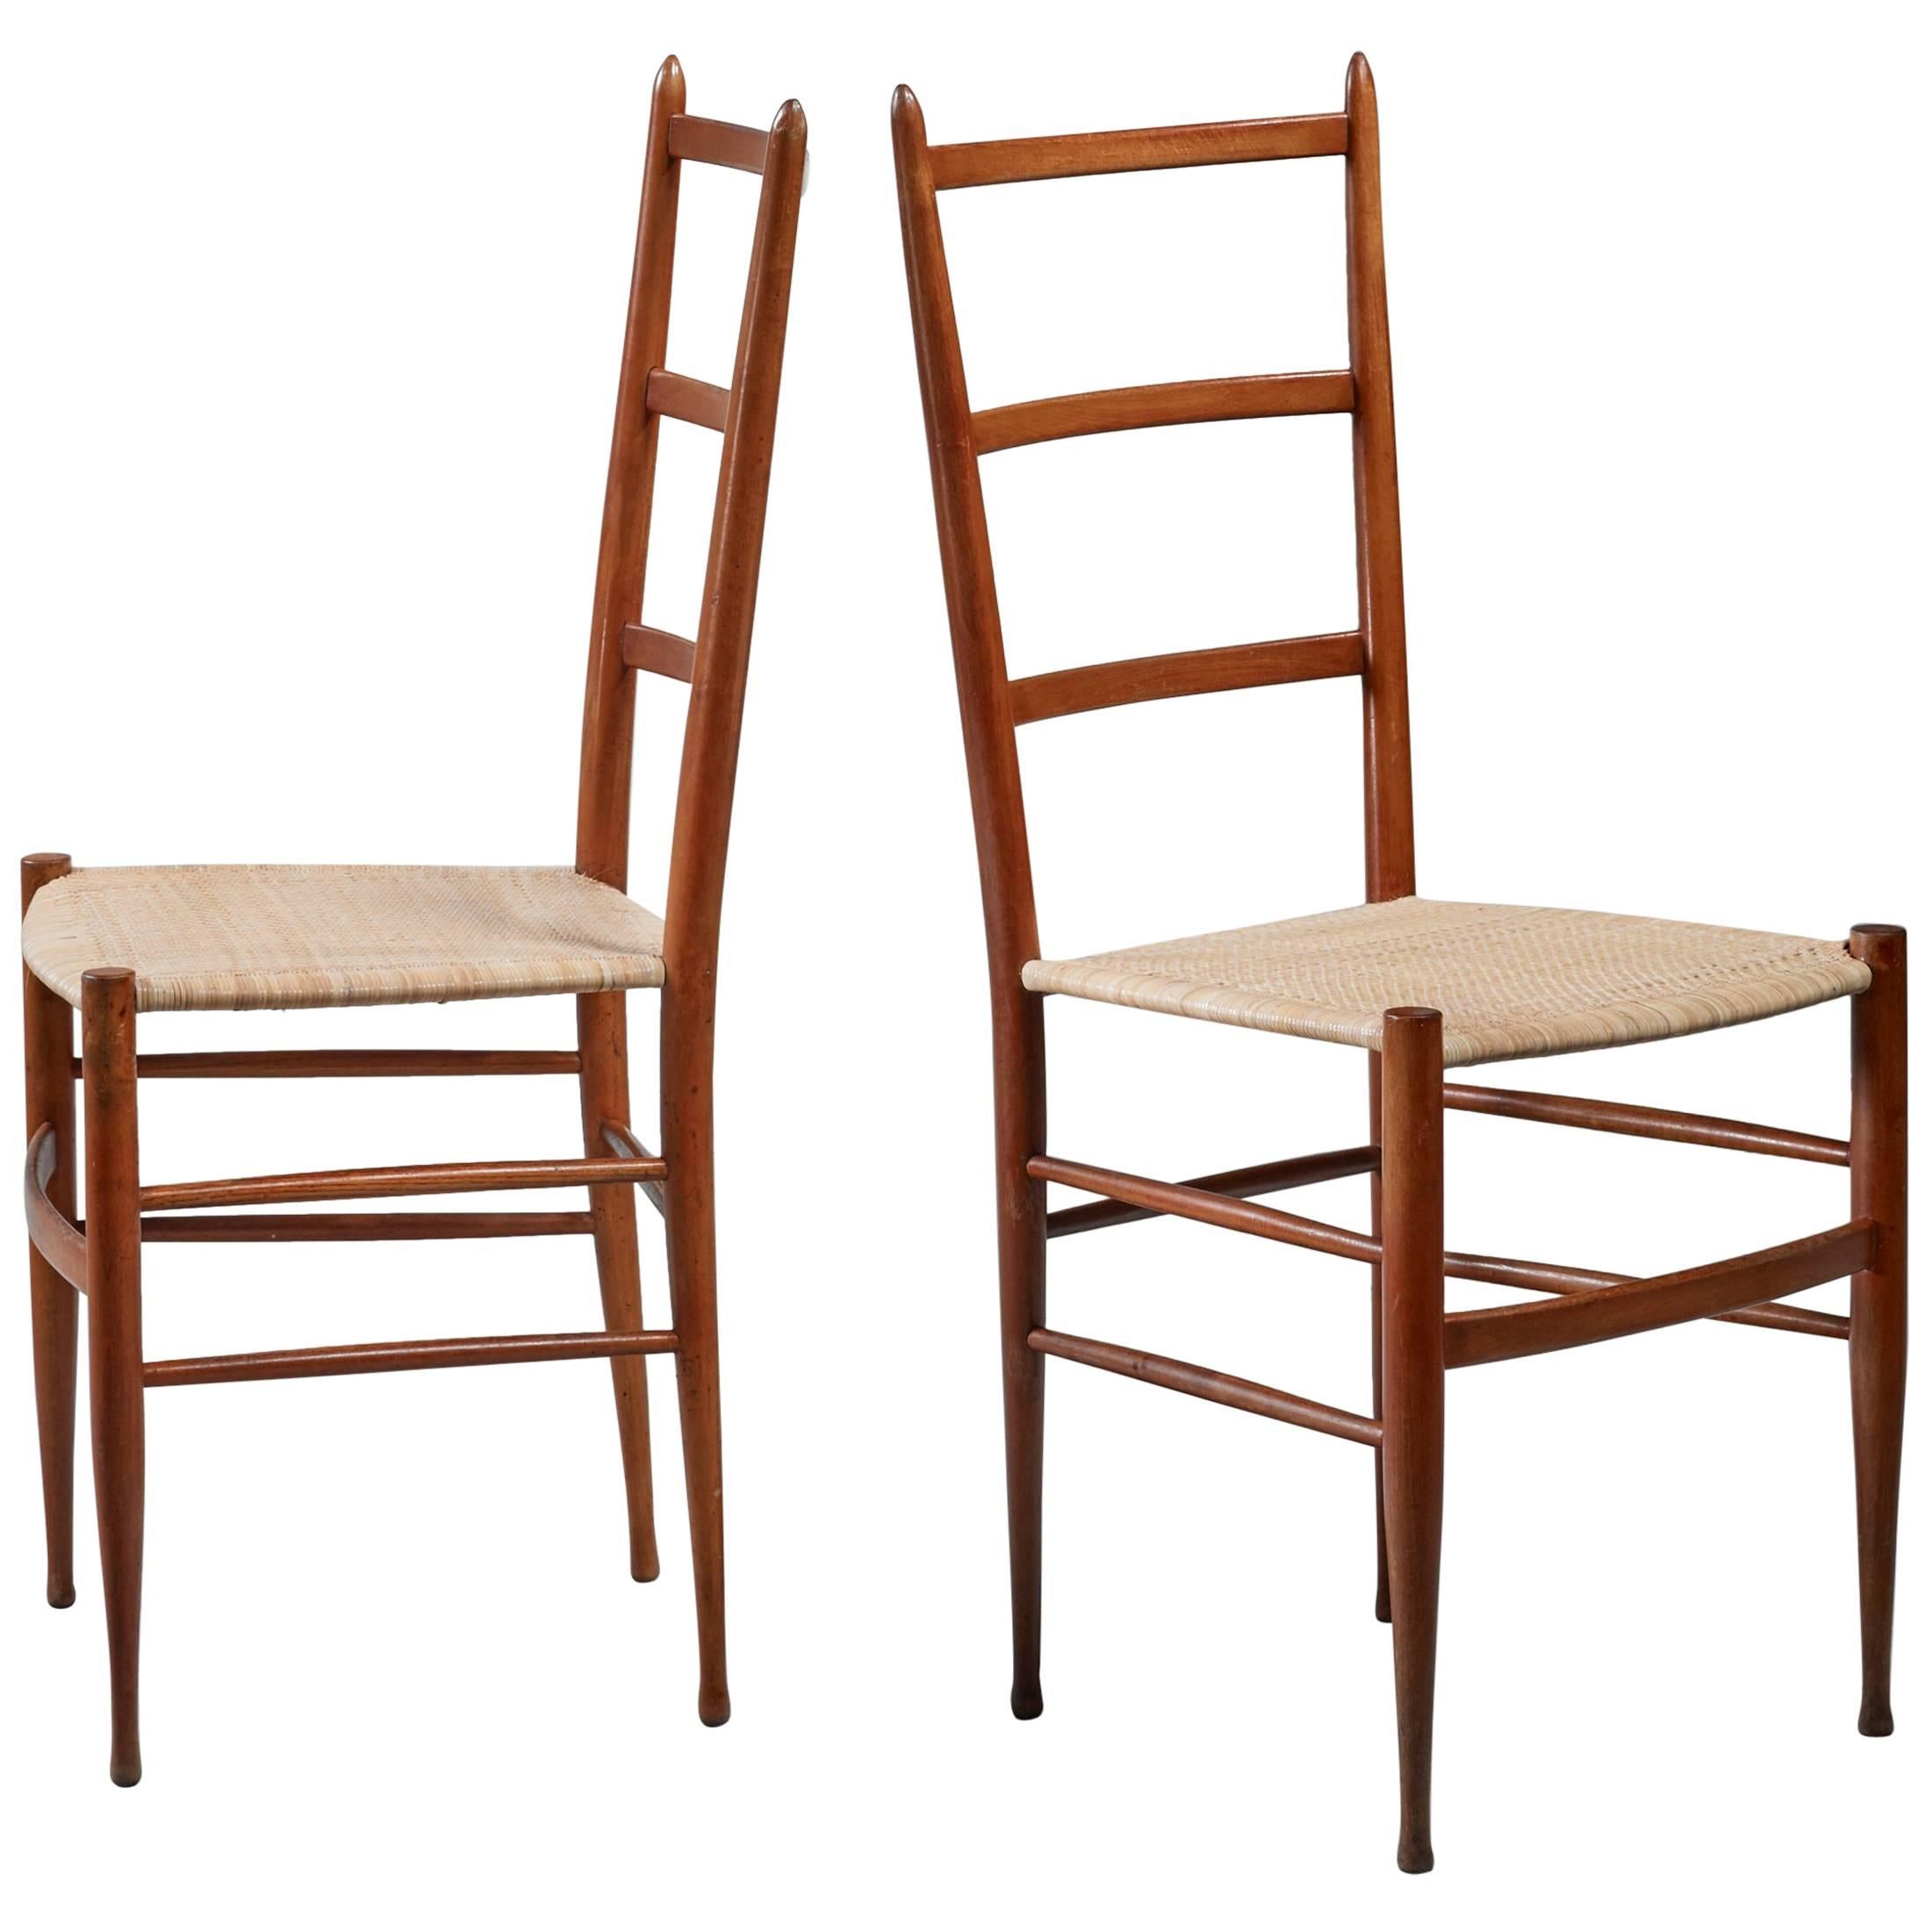 Pair of Chiavari chairs, Italy